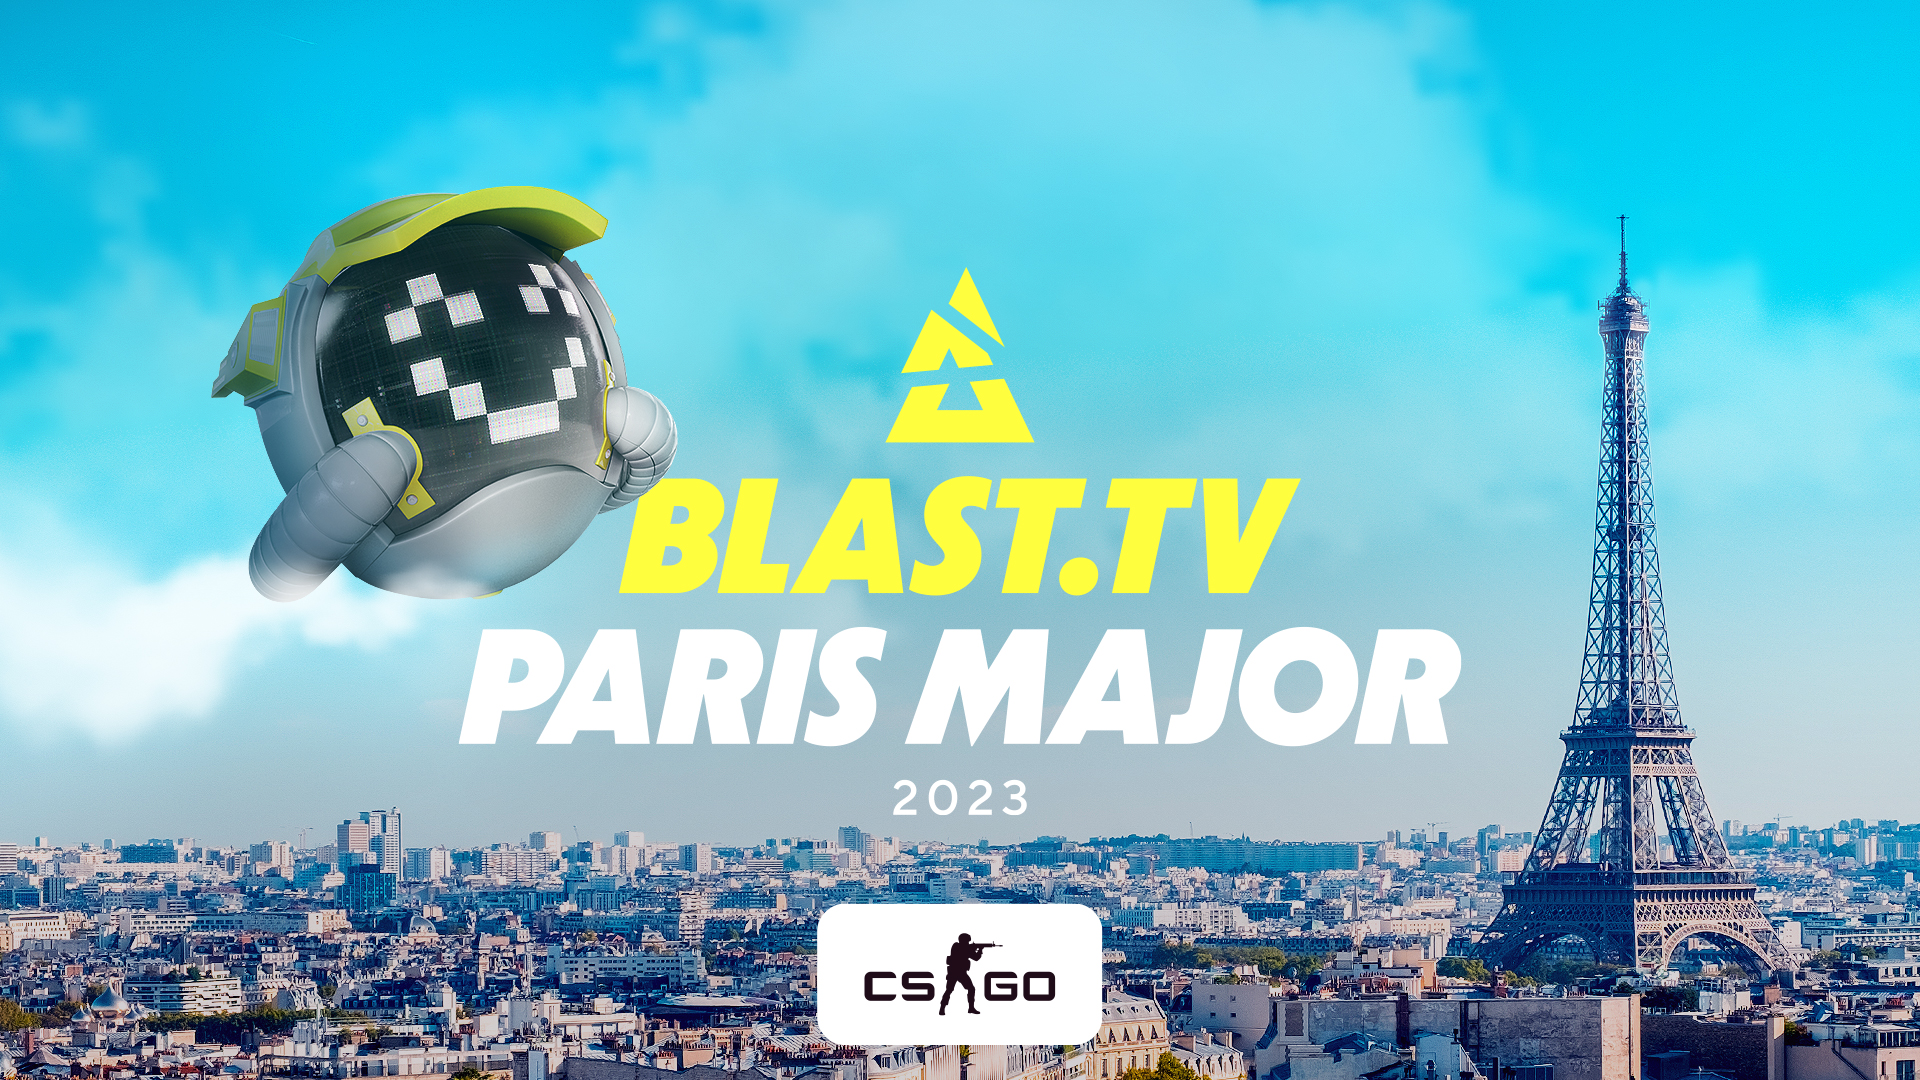 paris major blast